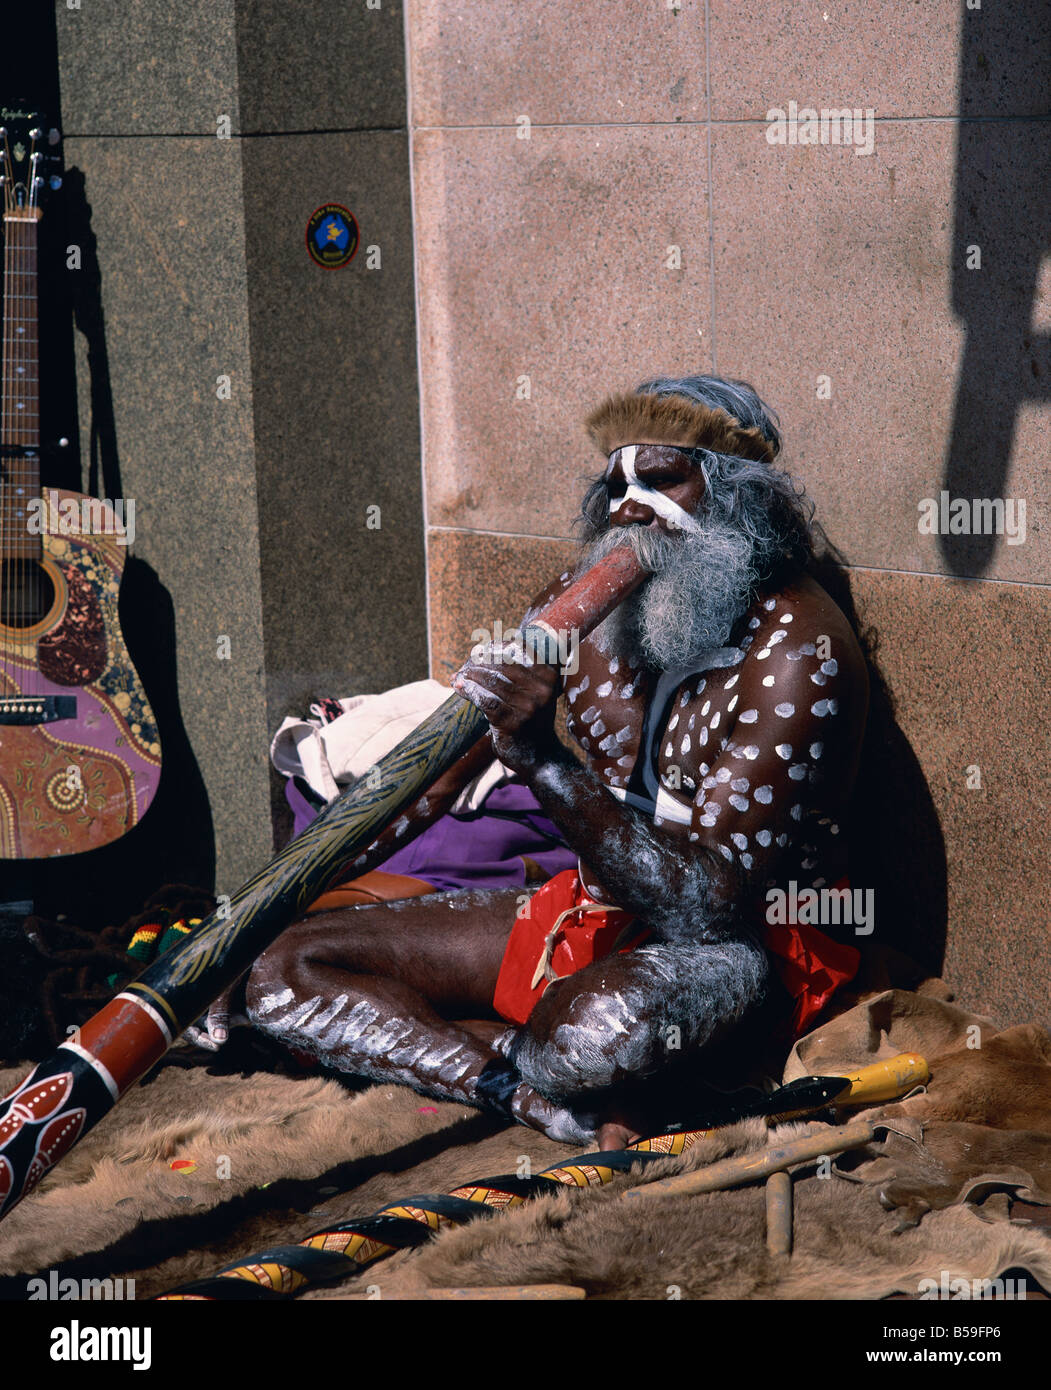 Ein Aborigine Straße Straßenmusiker in Sydney New South Wales Australien M Mawson Stockfoto